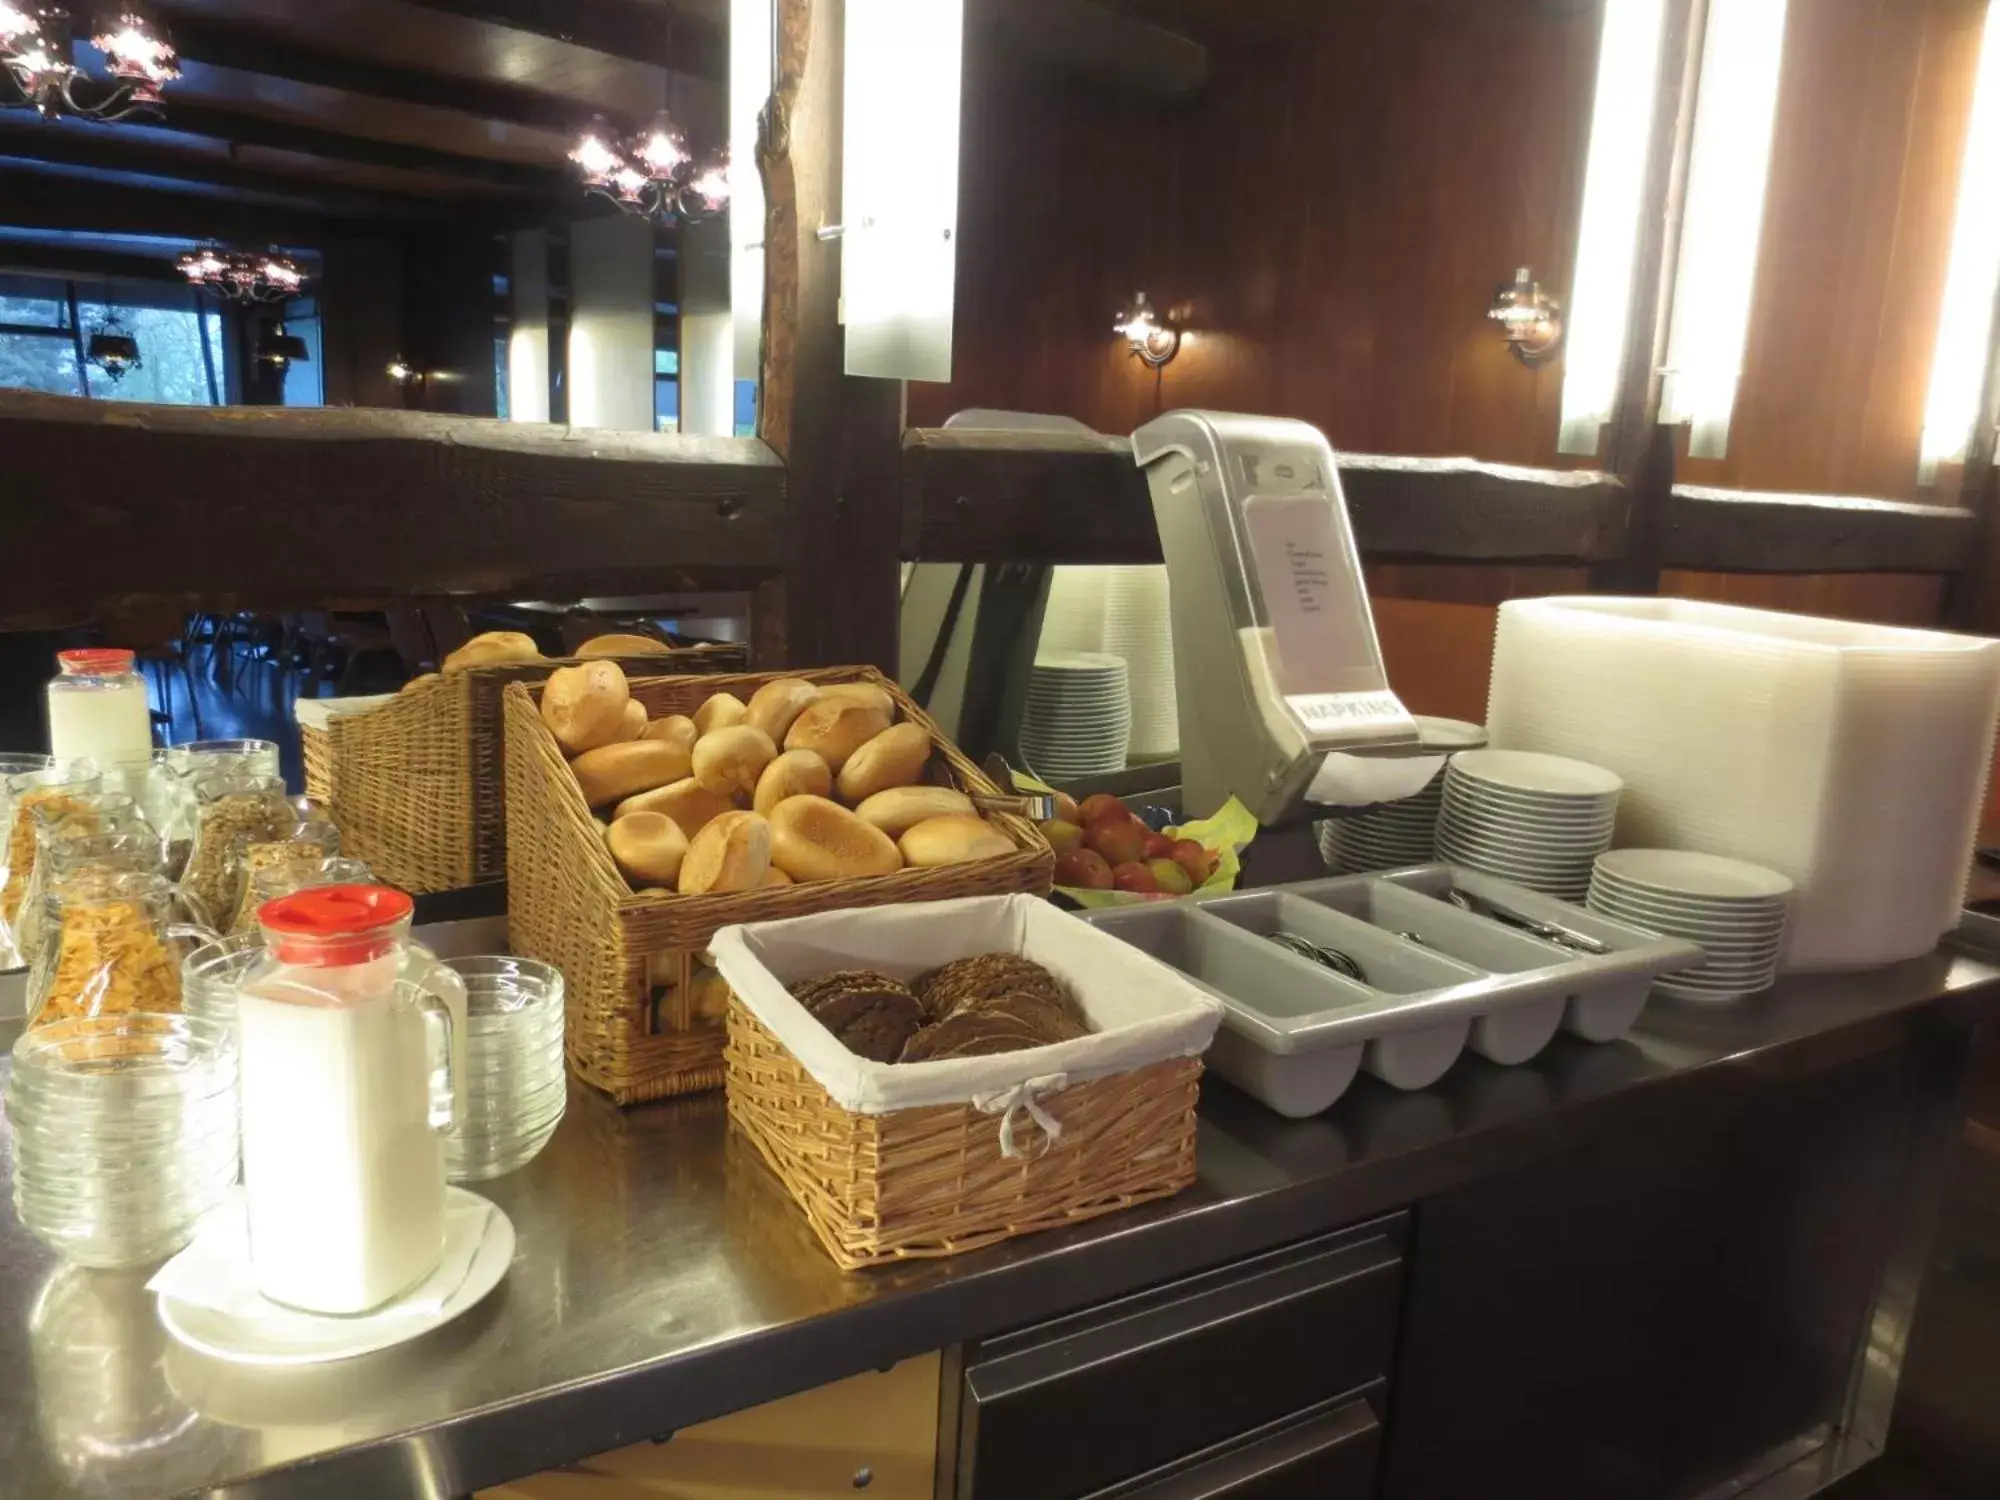 Buffet breakfast, Breakfast in Central-Hotel Tegel